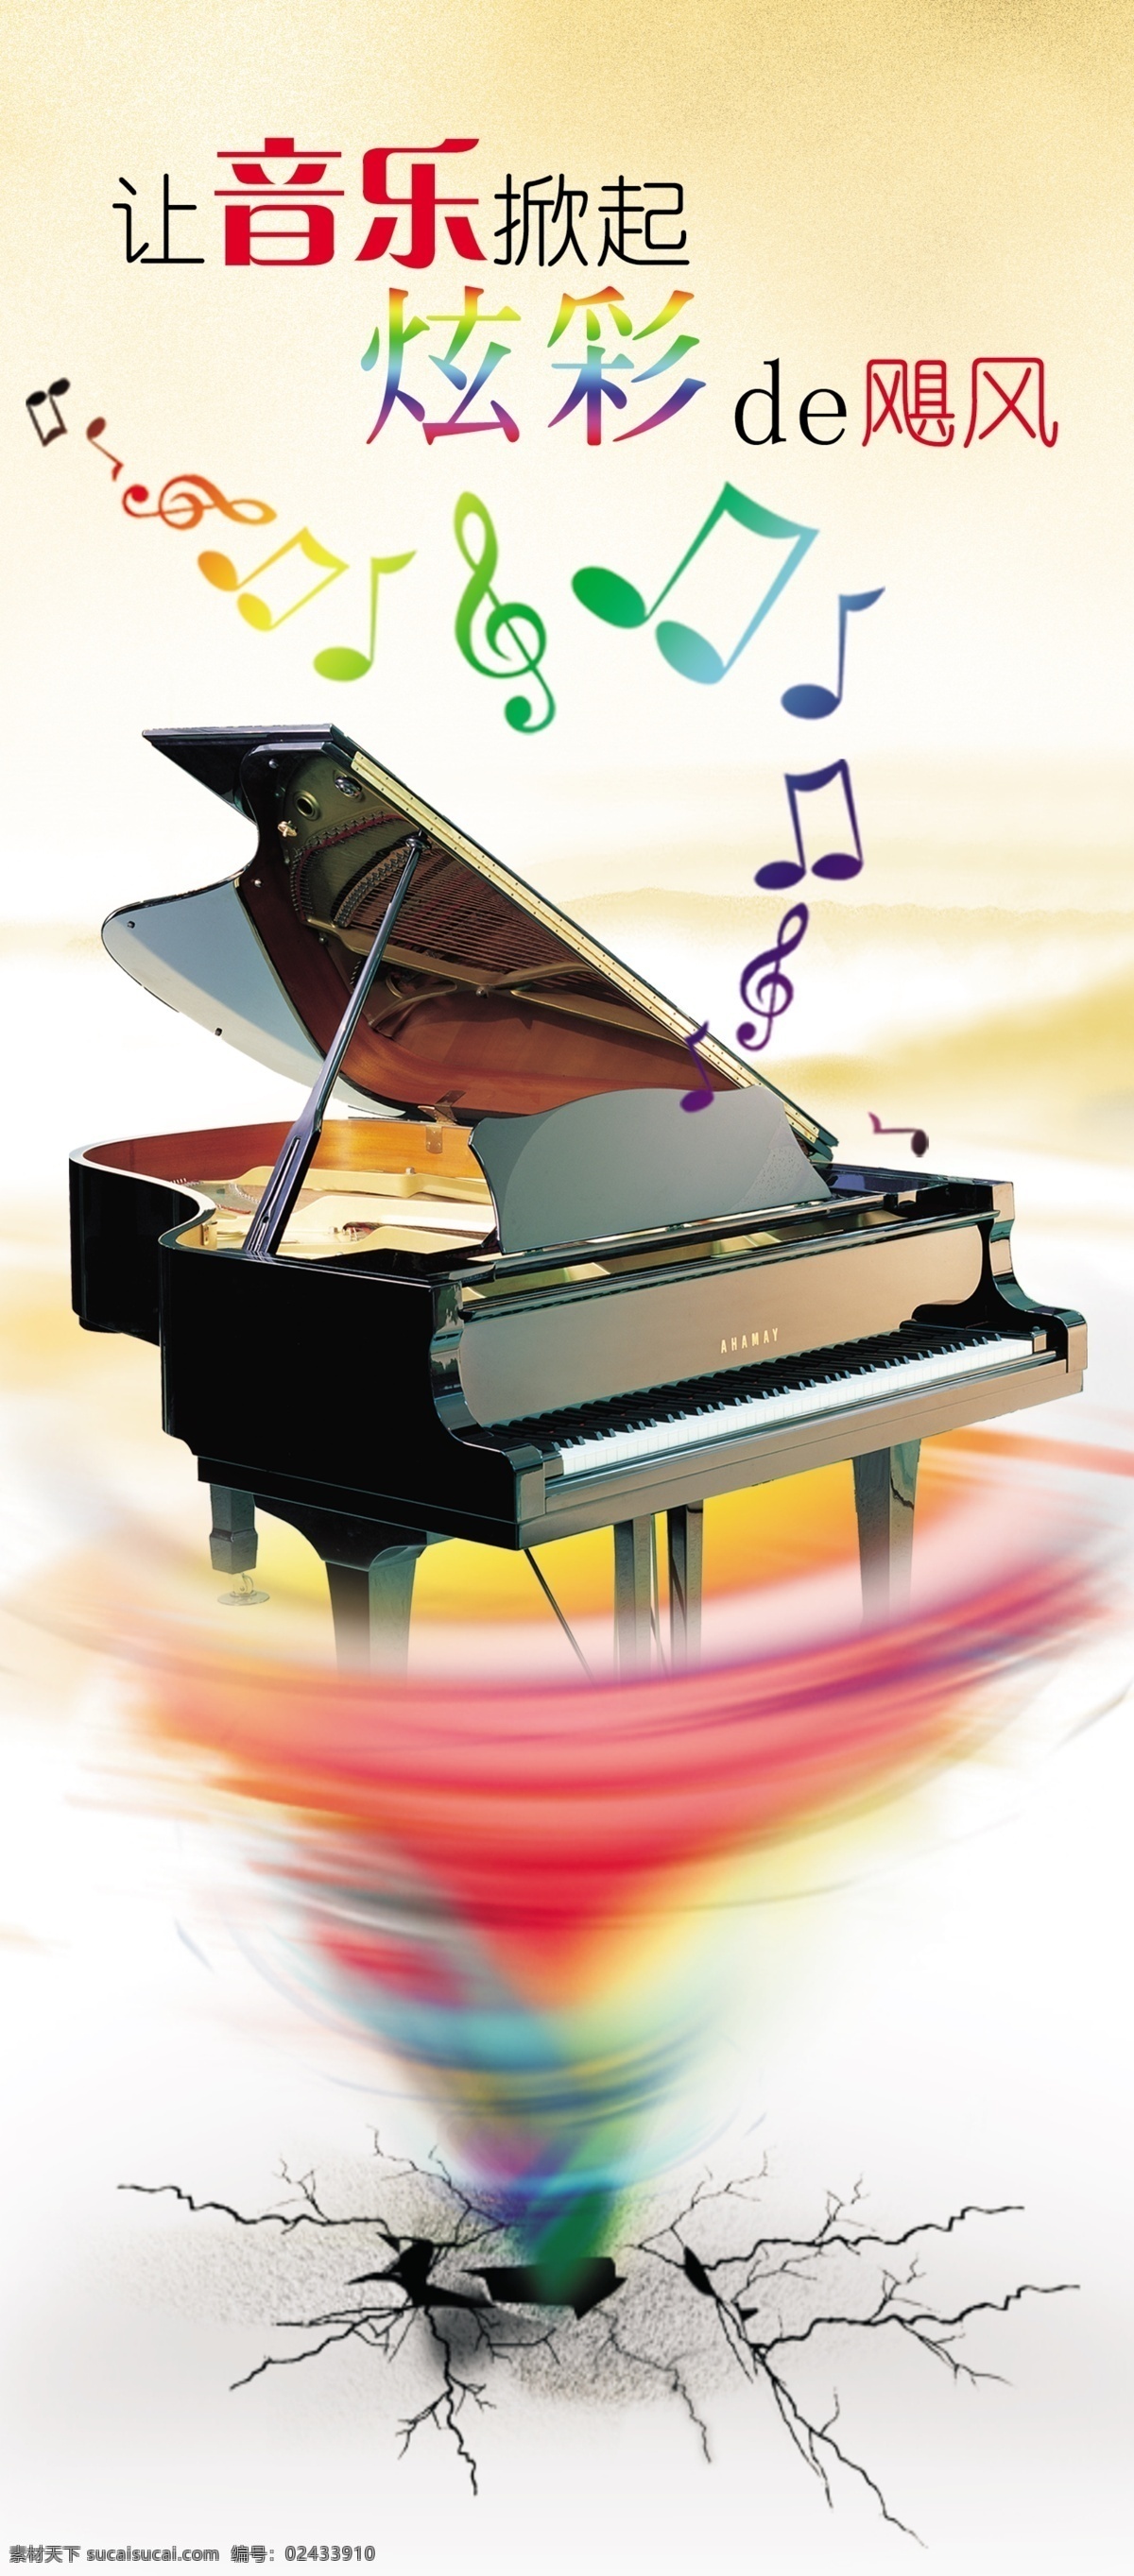 音乐会宣传 炫彩 龙卷风 钢琴 音乐 乐符 裂缝 海报 背景 飓风 水墨山 广告设计模板 源文件